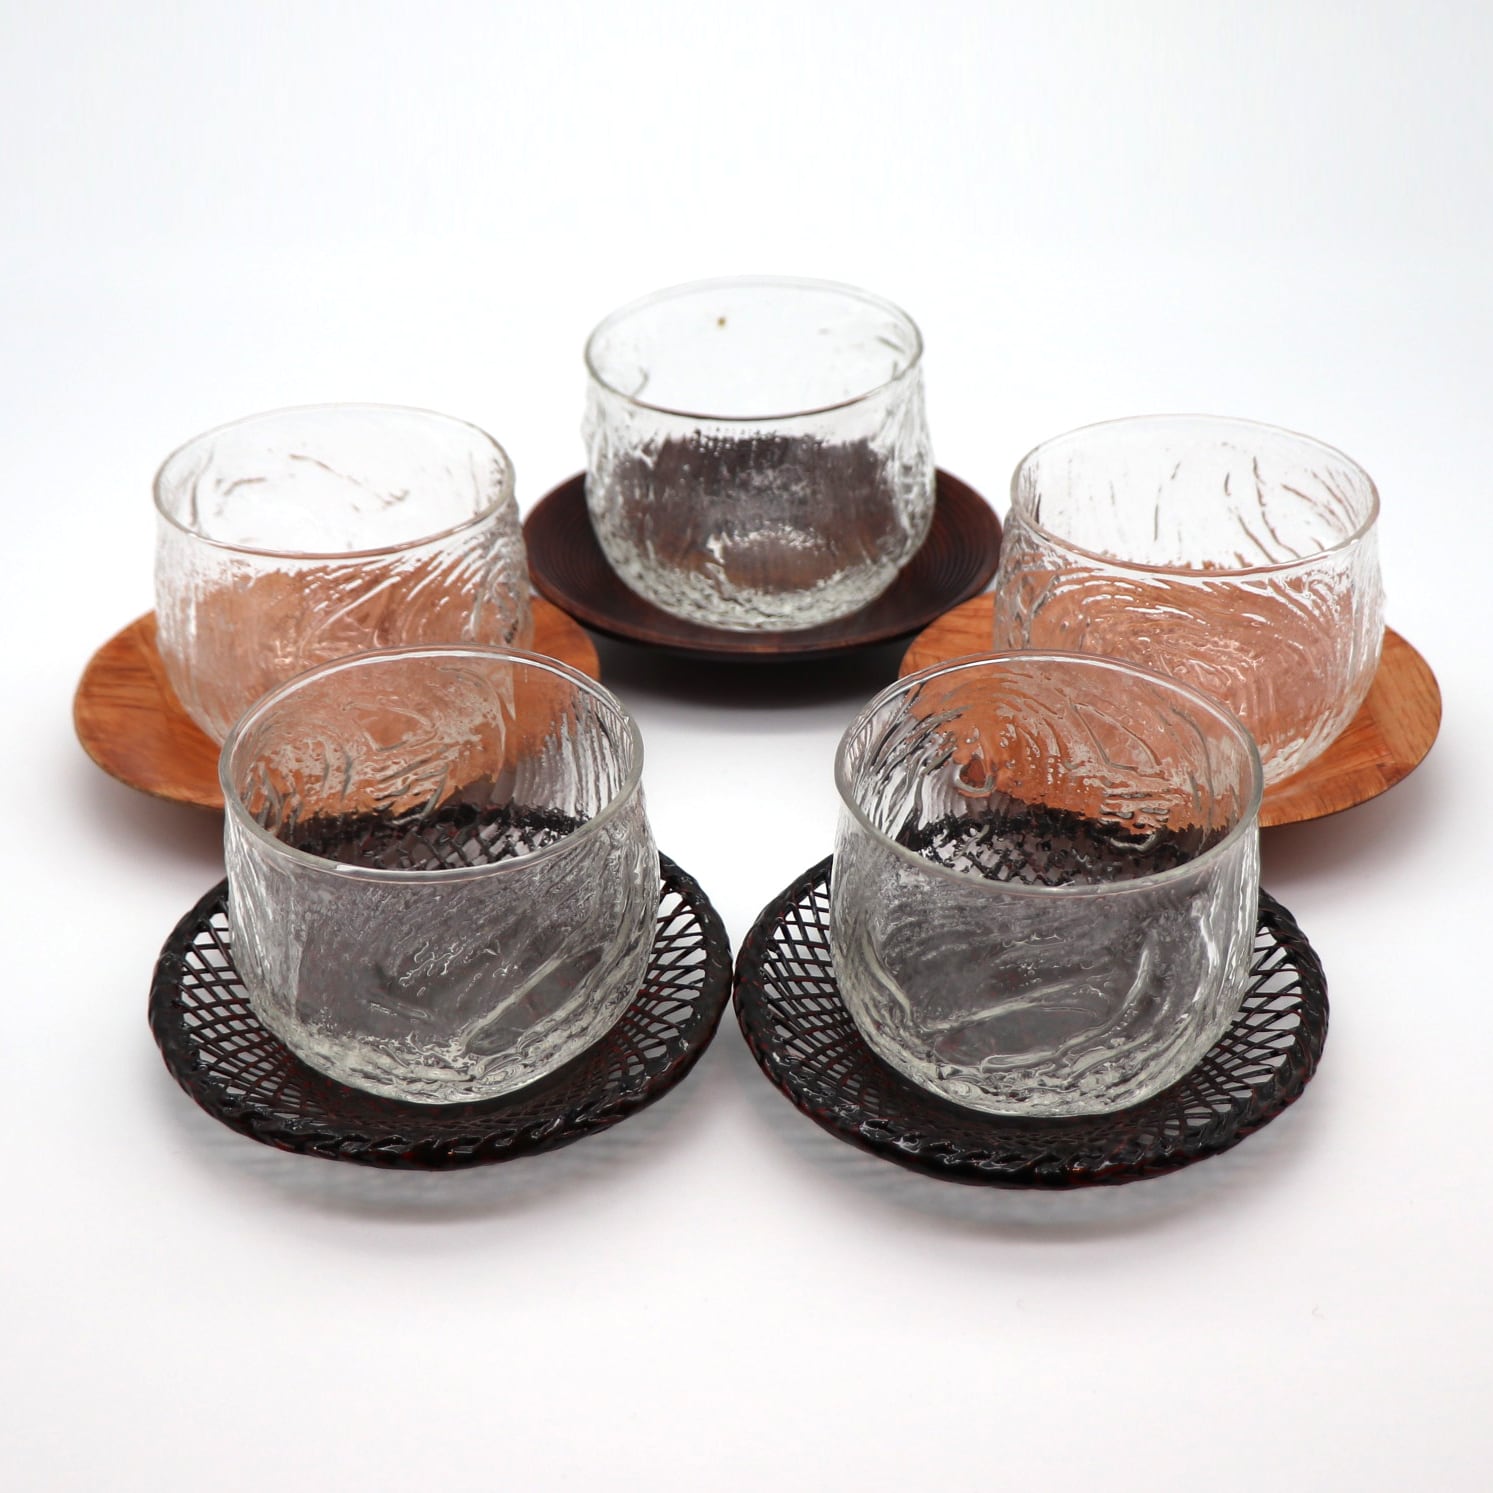 東洋ガラス・冷茶グラス・5客・茶托セット・No.201017-39・梱包サイズ60